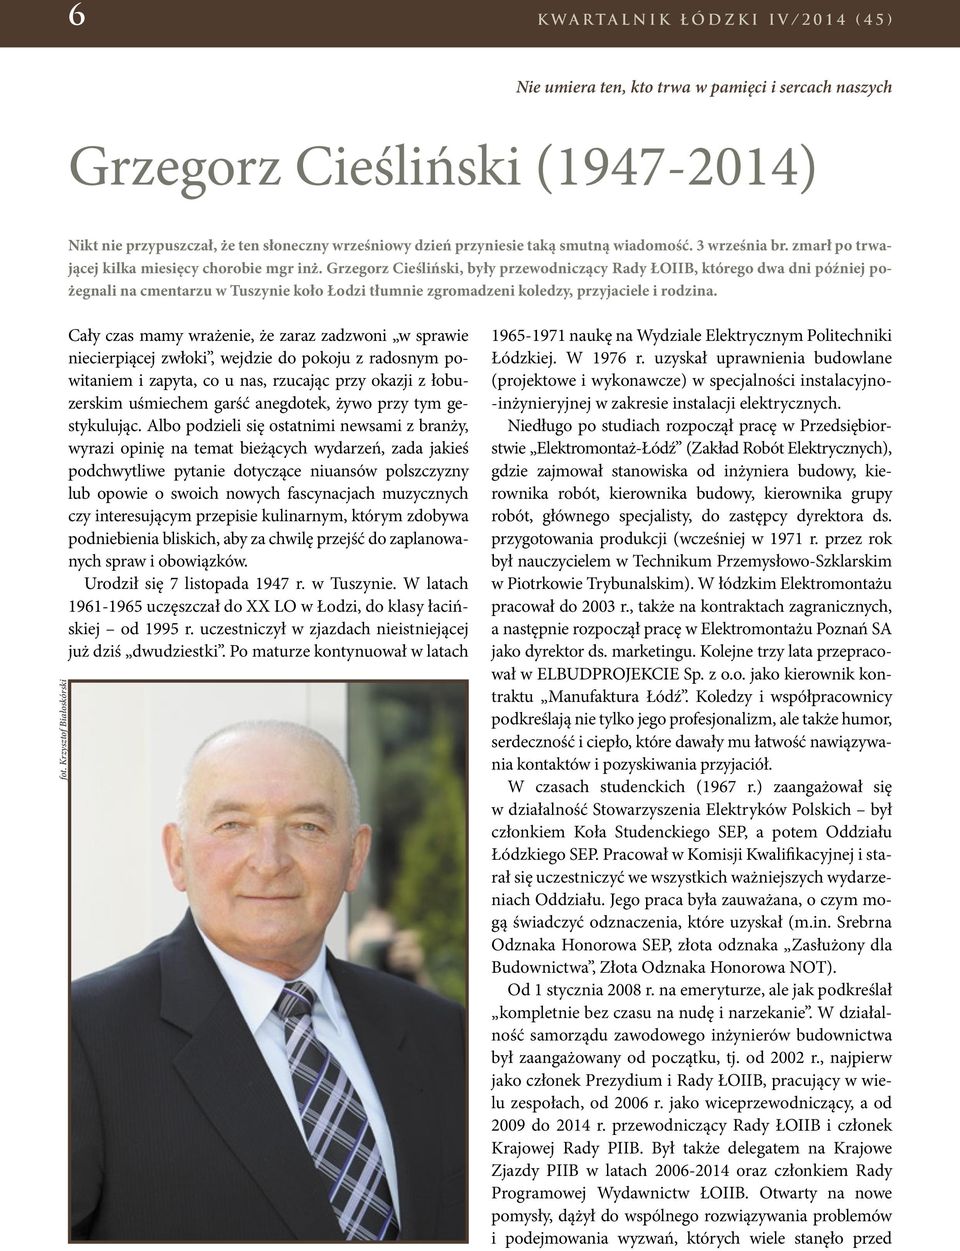 Grzegorz Cieśliński, były przewodniczący Rady ŁOIIB, którego dwa dni później pożegnali na cmentarzu w Tuszynie koło Łodzi tłumnie zgromadzeni koledzy, przyjaciele i rodzina. fot.